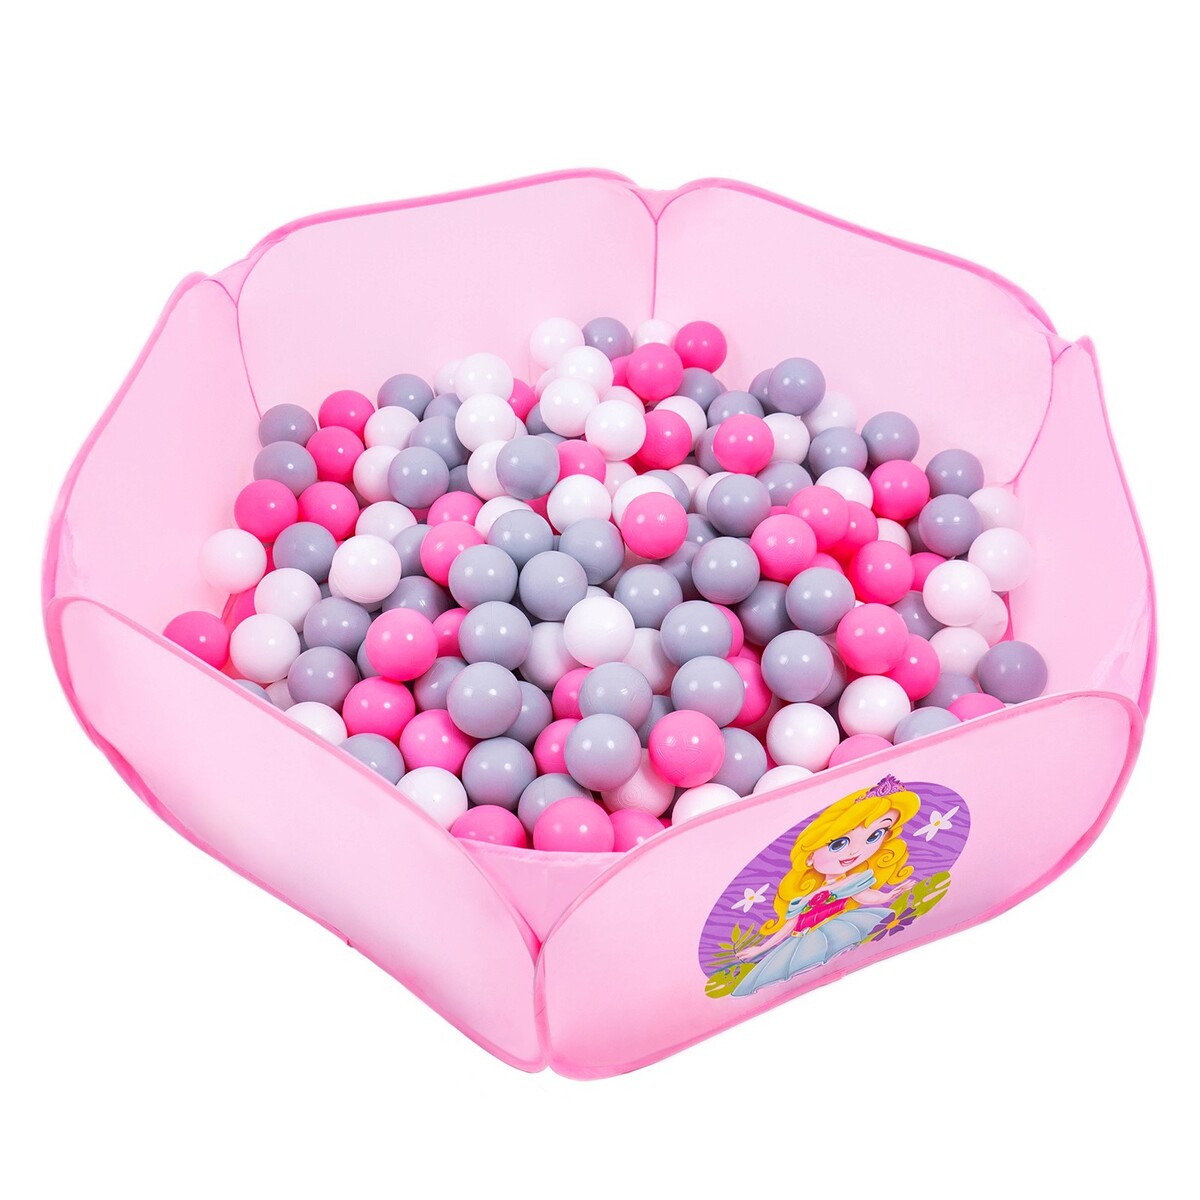 Шарики для сухого бассейна с рисунком, диаметр шара 7,5 см, набор 30 штук, цвет розовый, белый, серый шарики для сухого бассейна 150 штук диаметр 5 см